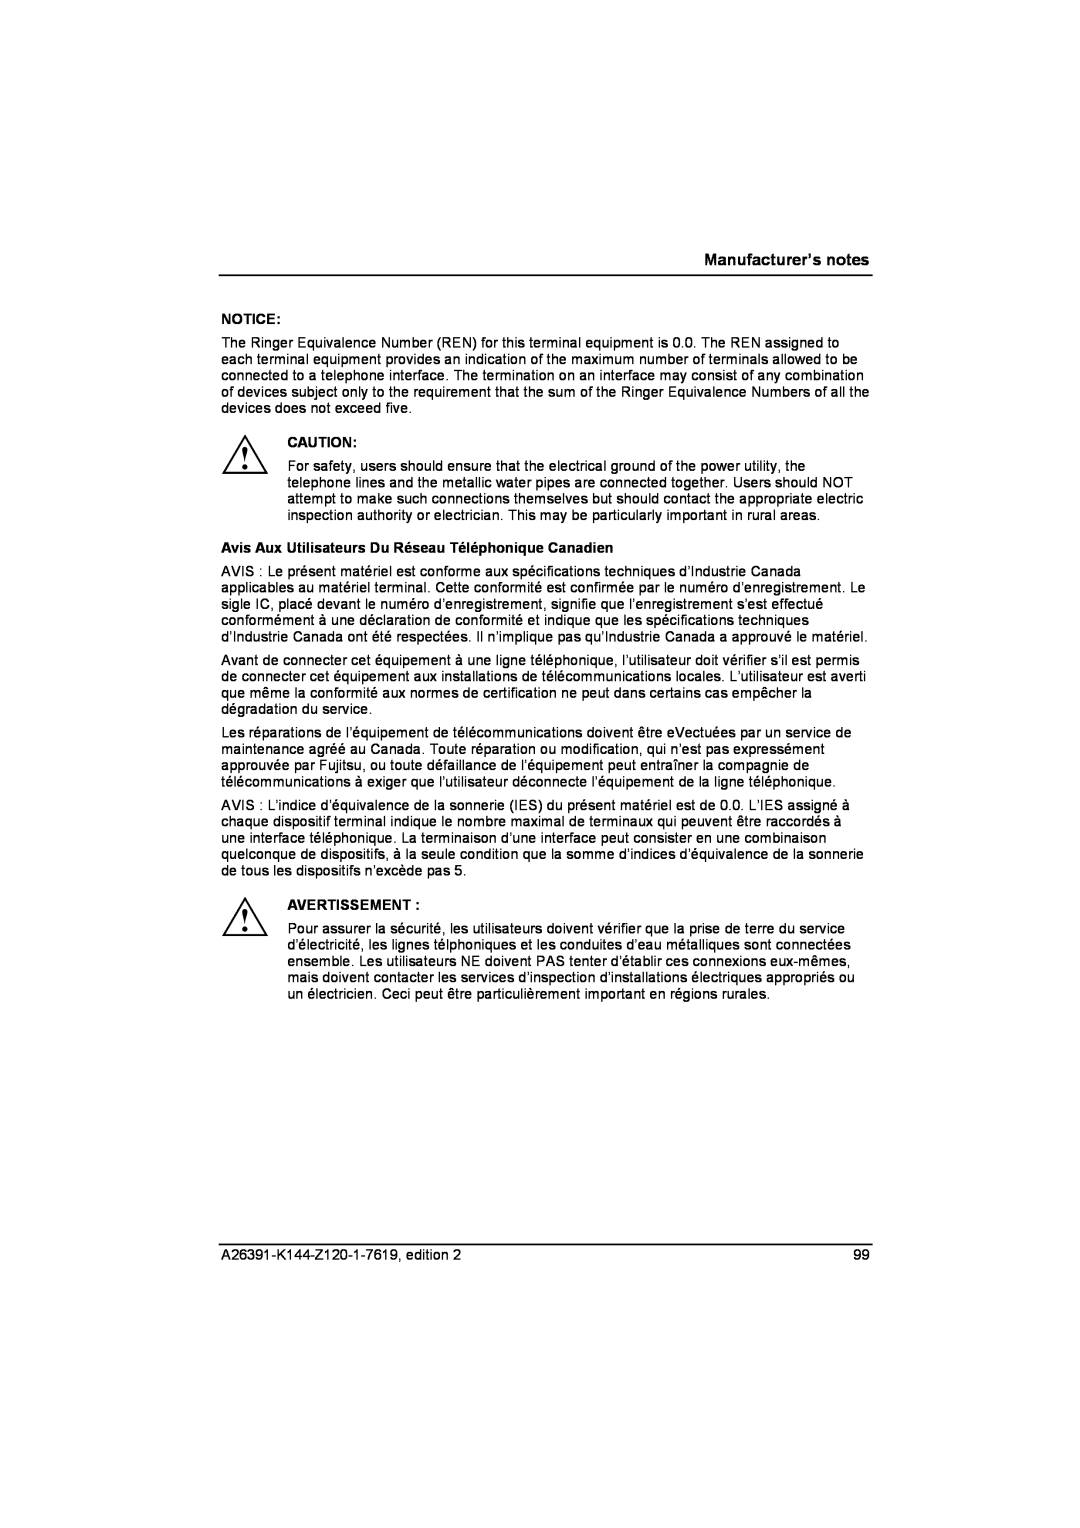 Fujitsu S SERIES manual Avis Aux Utilisateurs Du Réseau Téléphonique Canadien, Avertissement, Manufacturer’s notes 